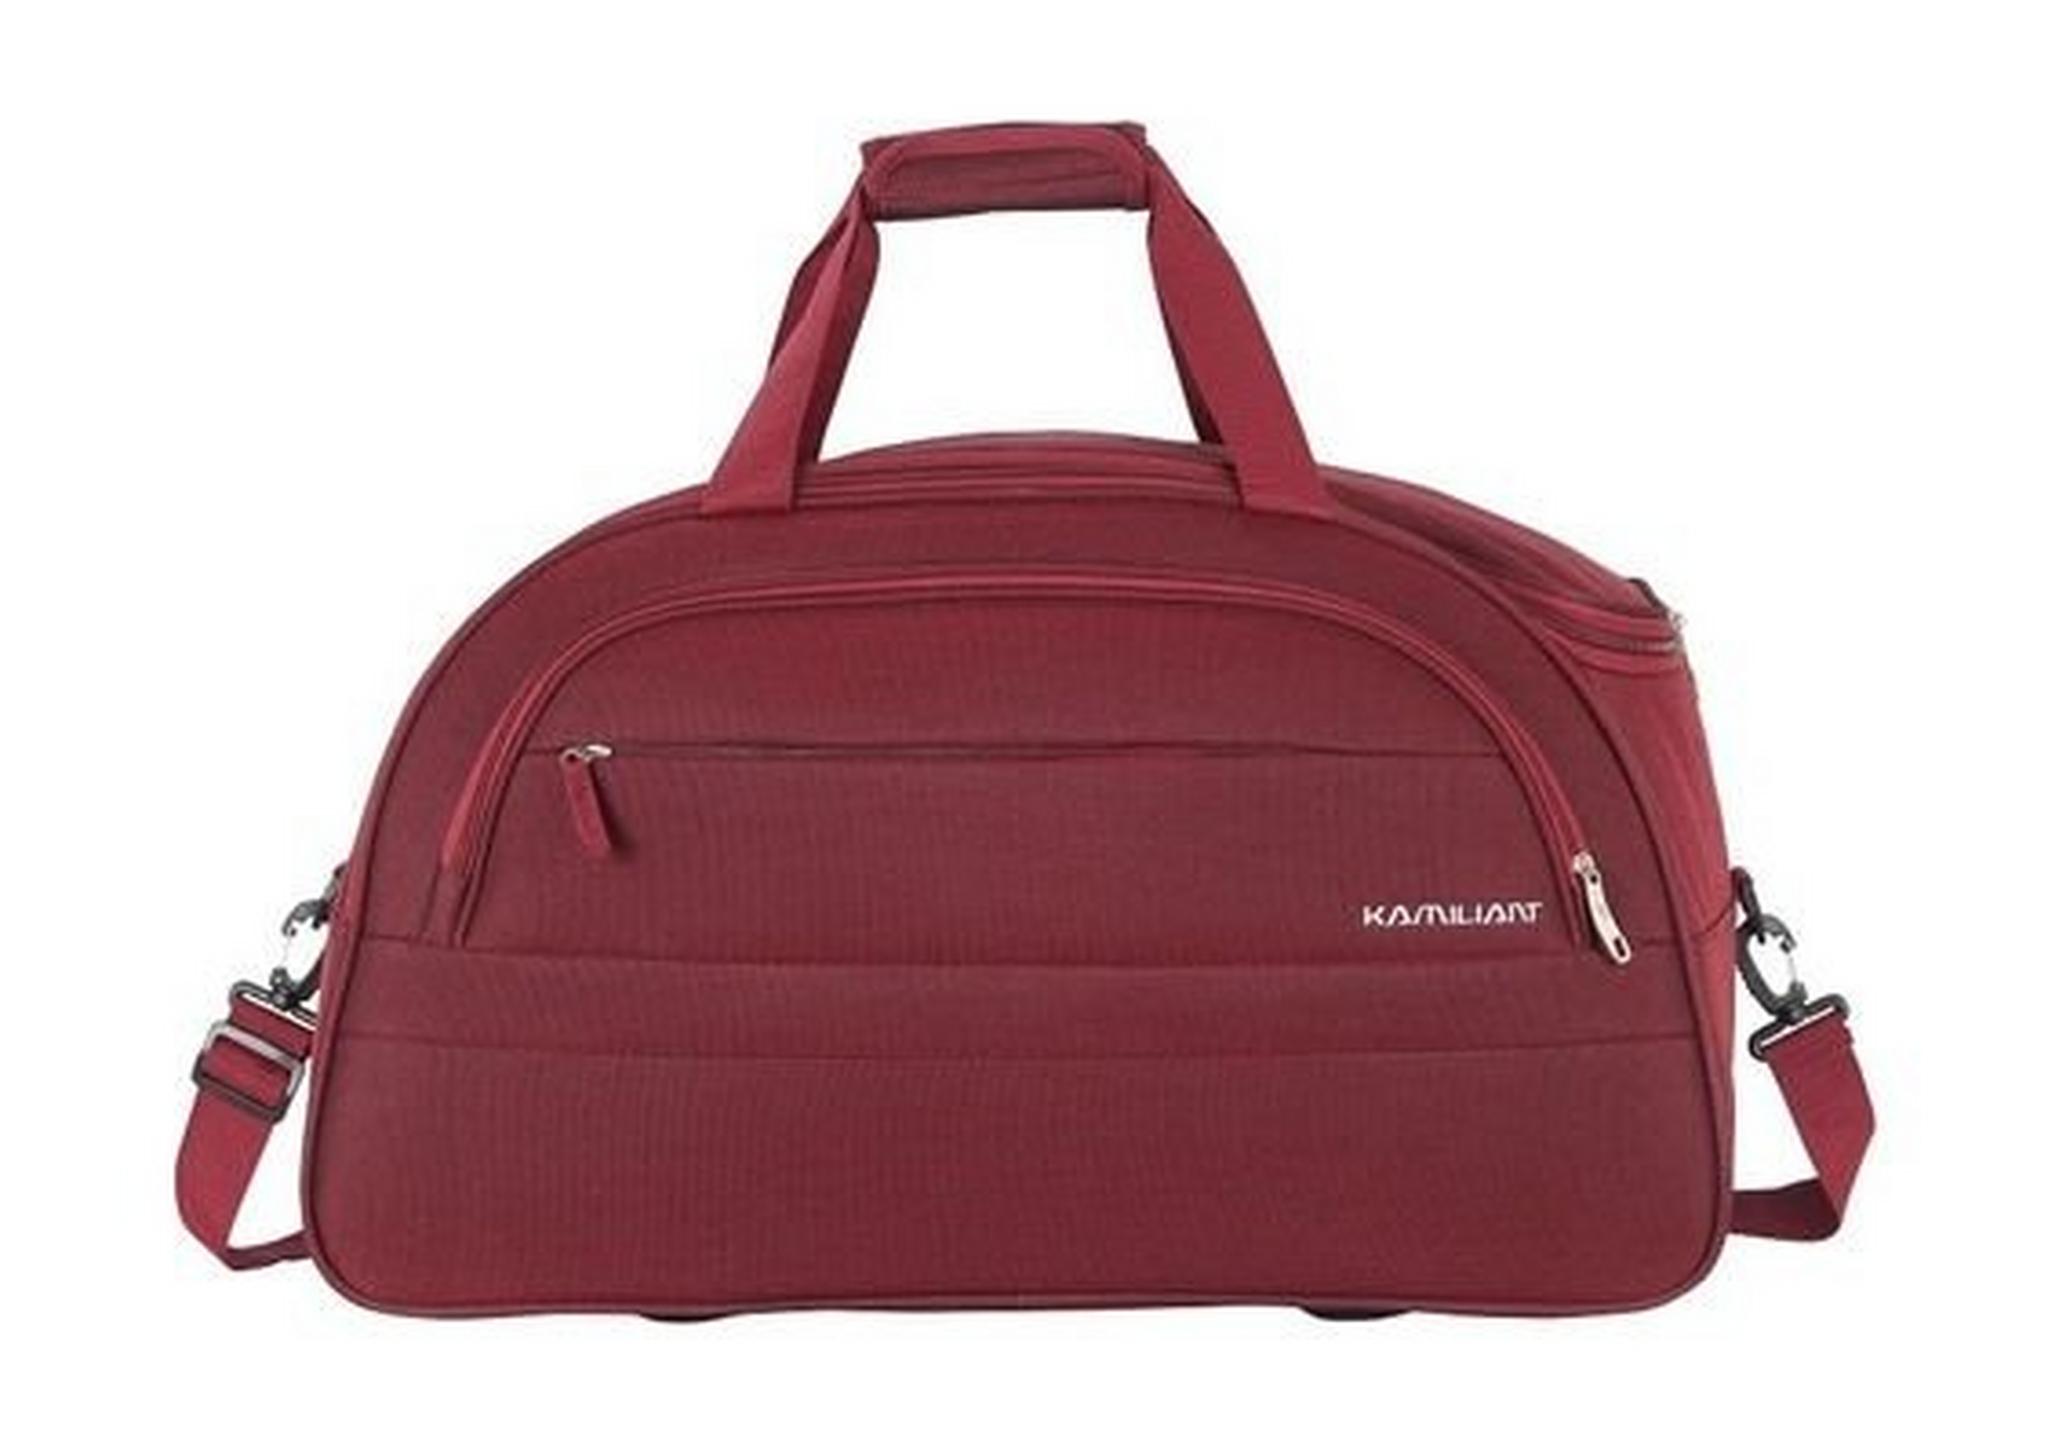 حقيبة زويا دافل من كاميليانت - ٦٥ سم - أحمر (19OX00005)